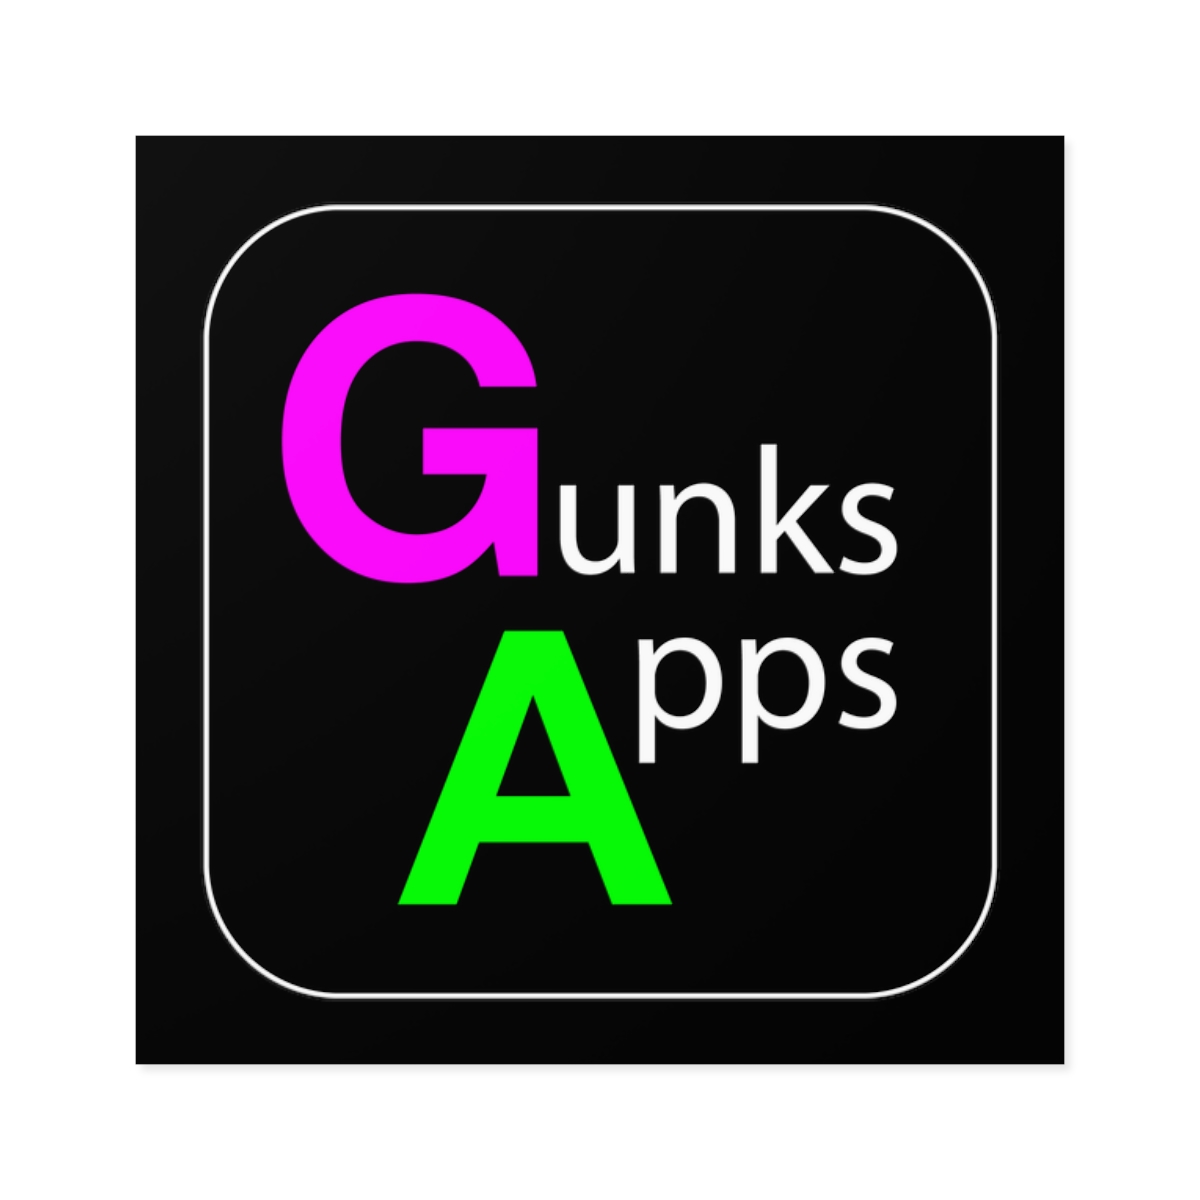 Gunks Apps Classic Square Stciker product thumbnail image